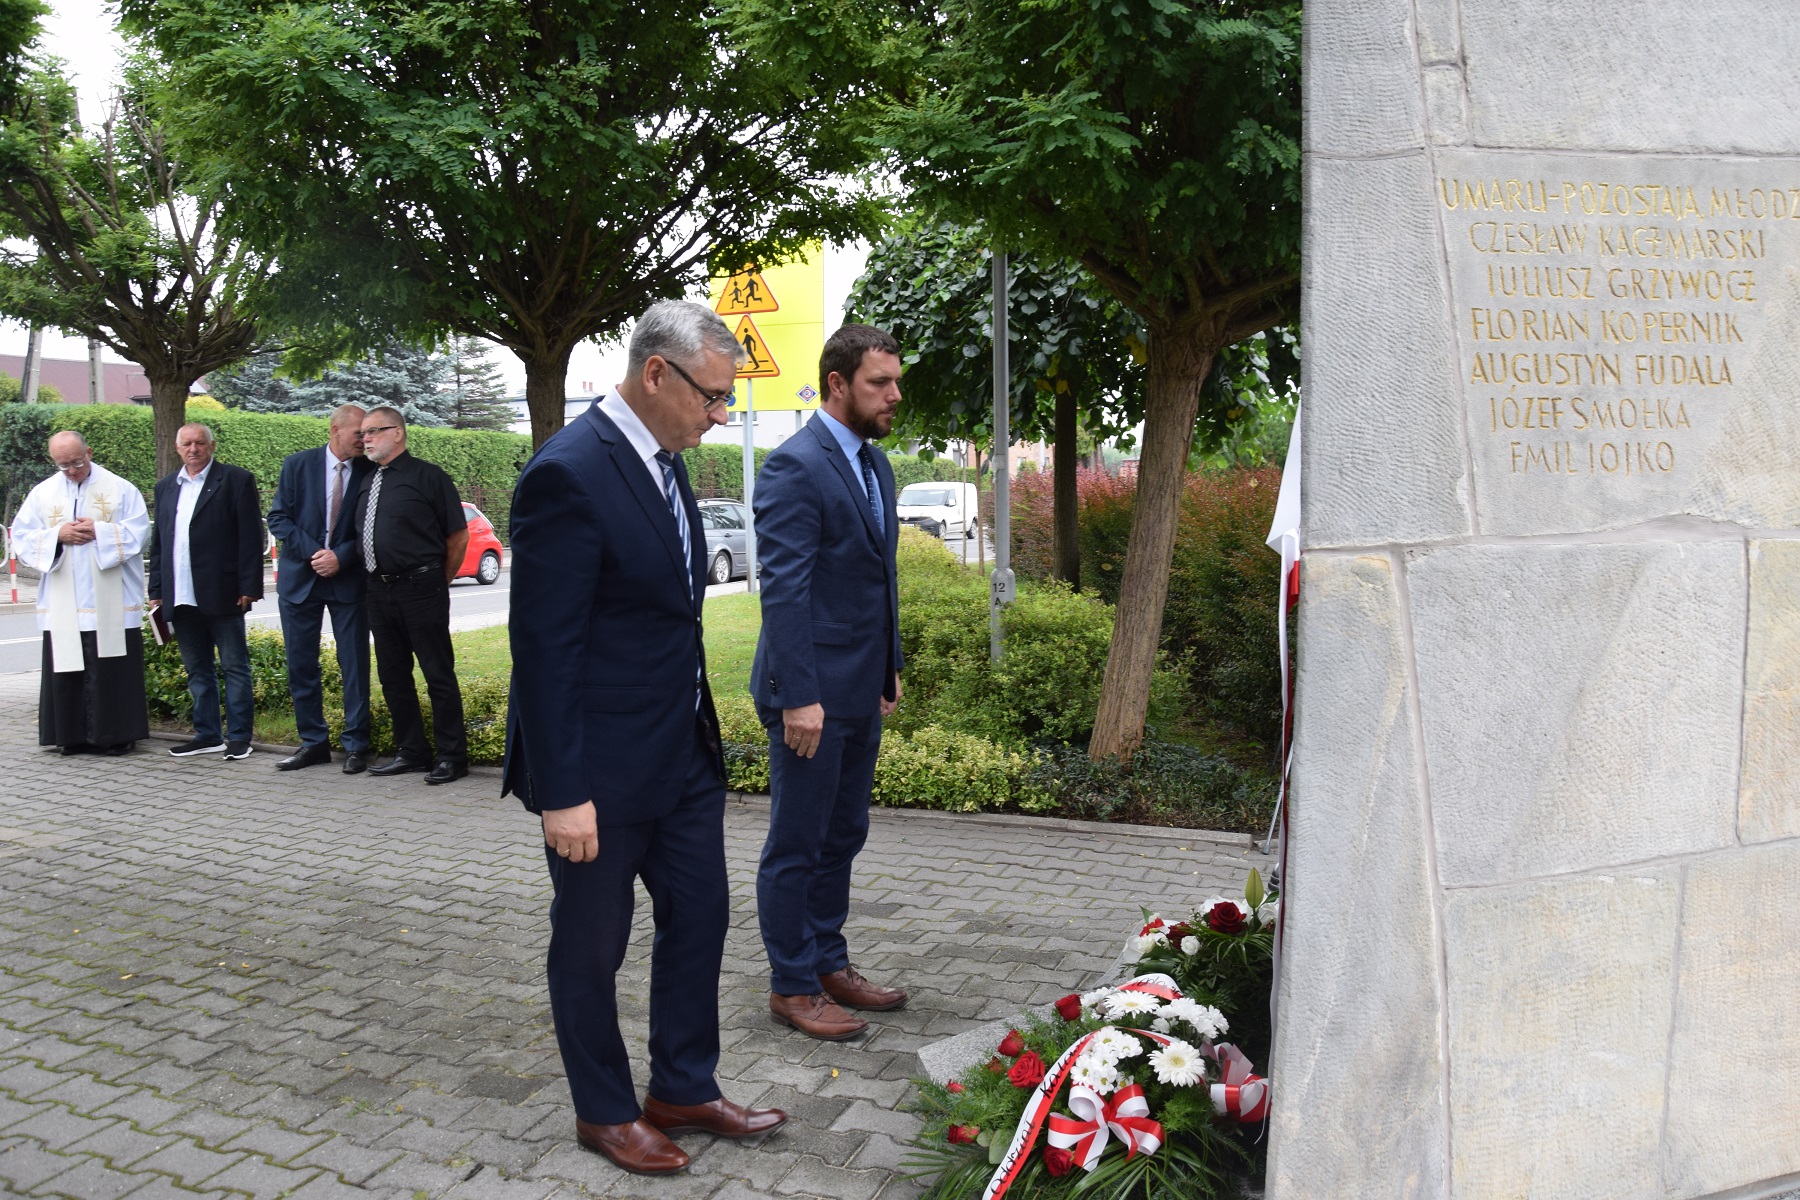 Uroczystość odsłonięcia i poświęcenia odrestaurowanego pomnika upamiętniającego powstańców śląskich – mieszkańców Gierałtowic poległych i zamordowanych w czasie II wojny światowej. Fot. Danuta Mikoda/IPN